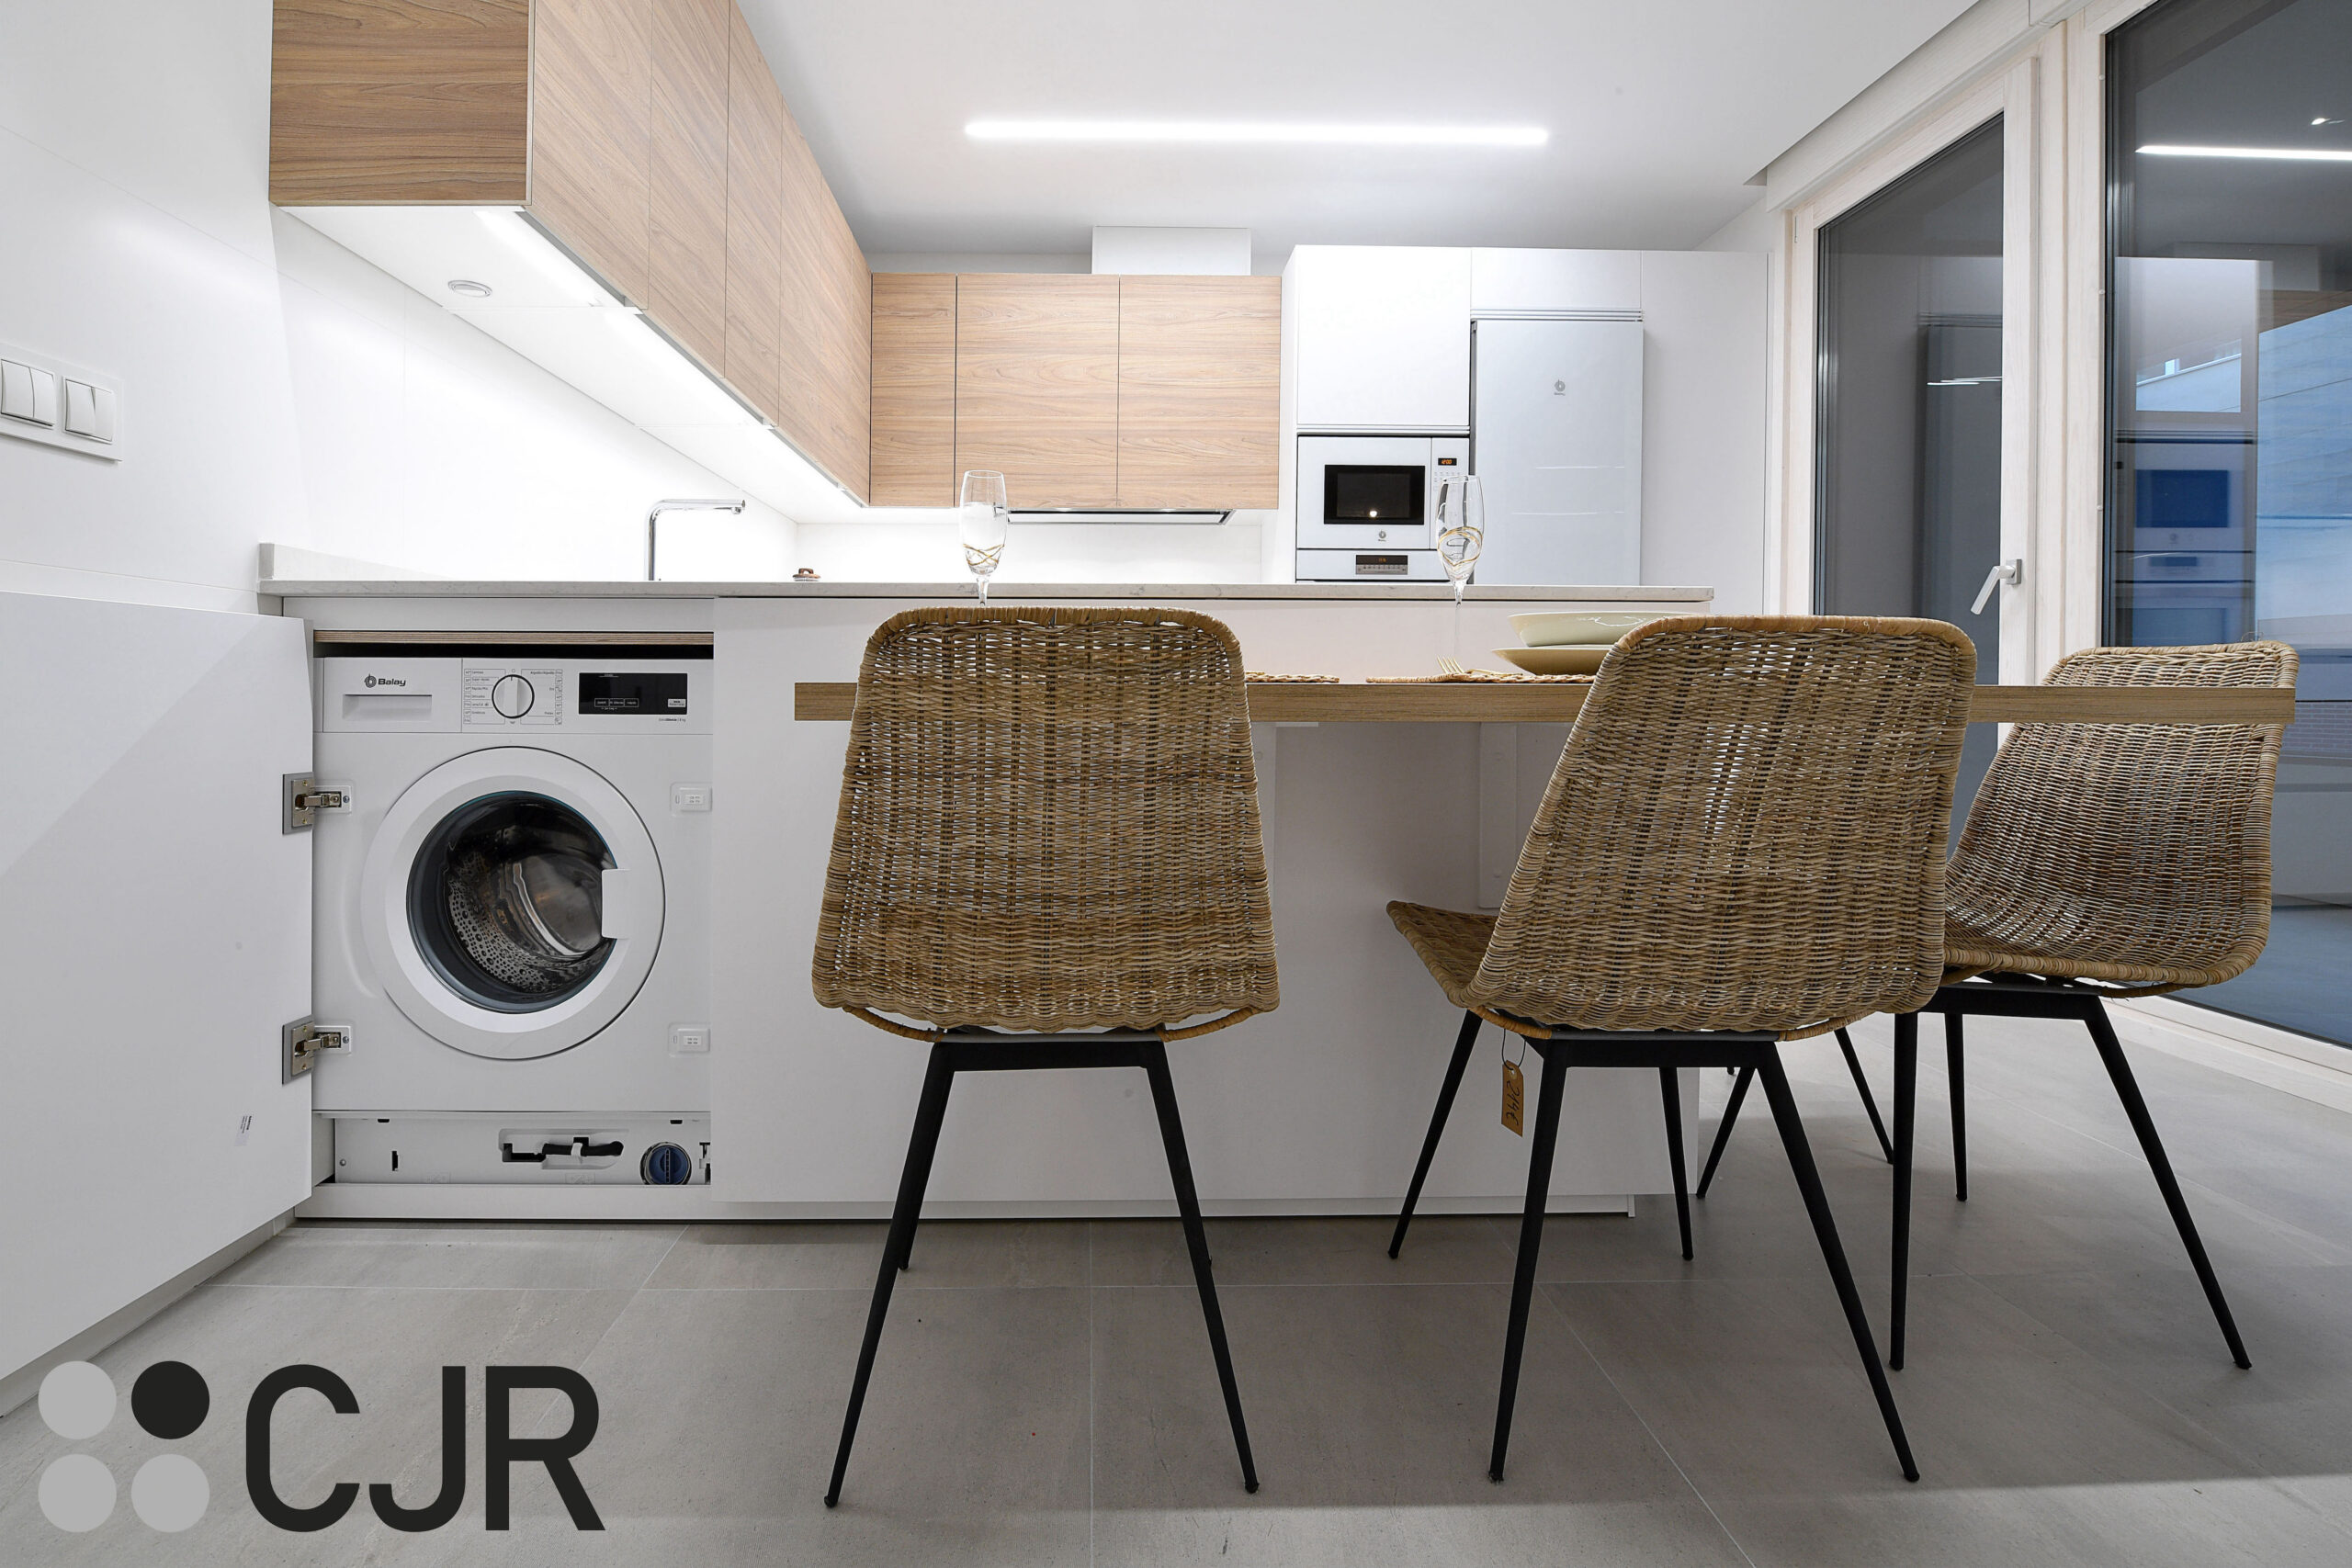 lavadora integrada en la cocina blanca mate y madera semiabierta al salon cjr